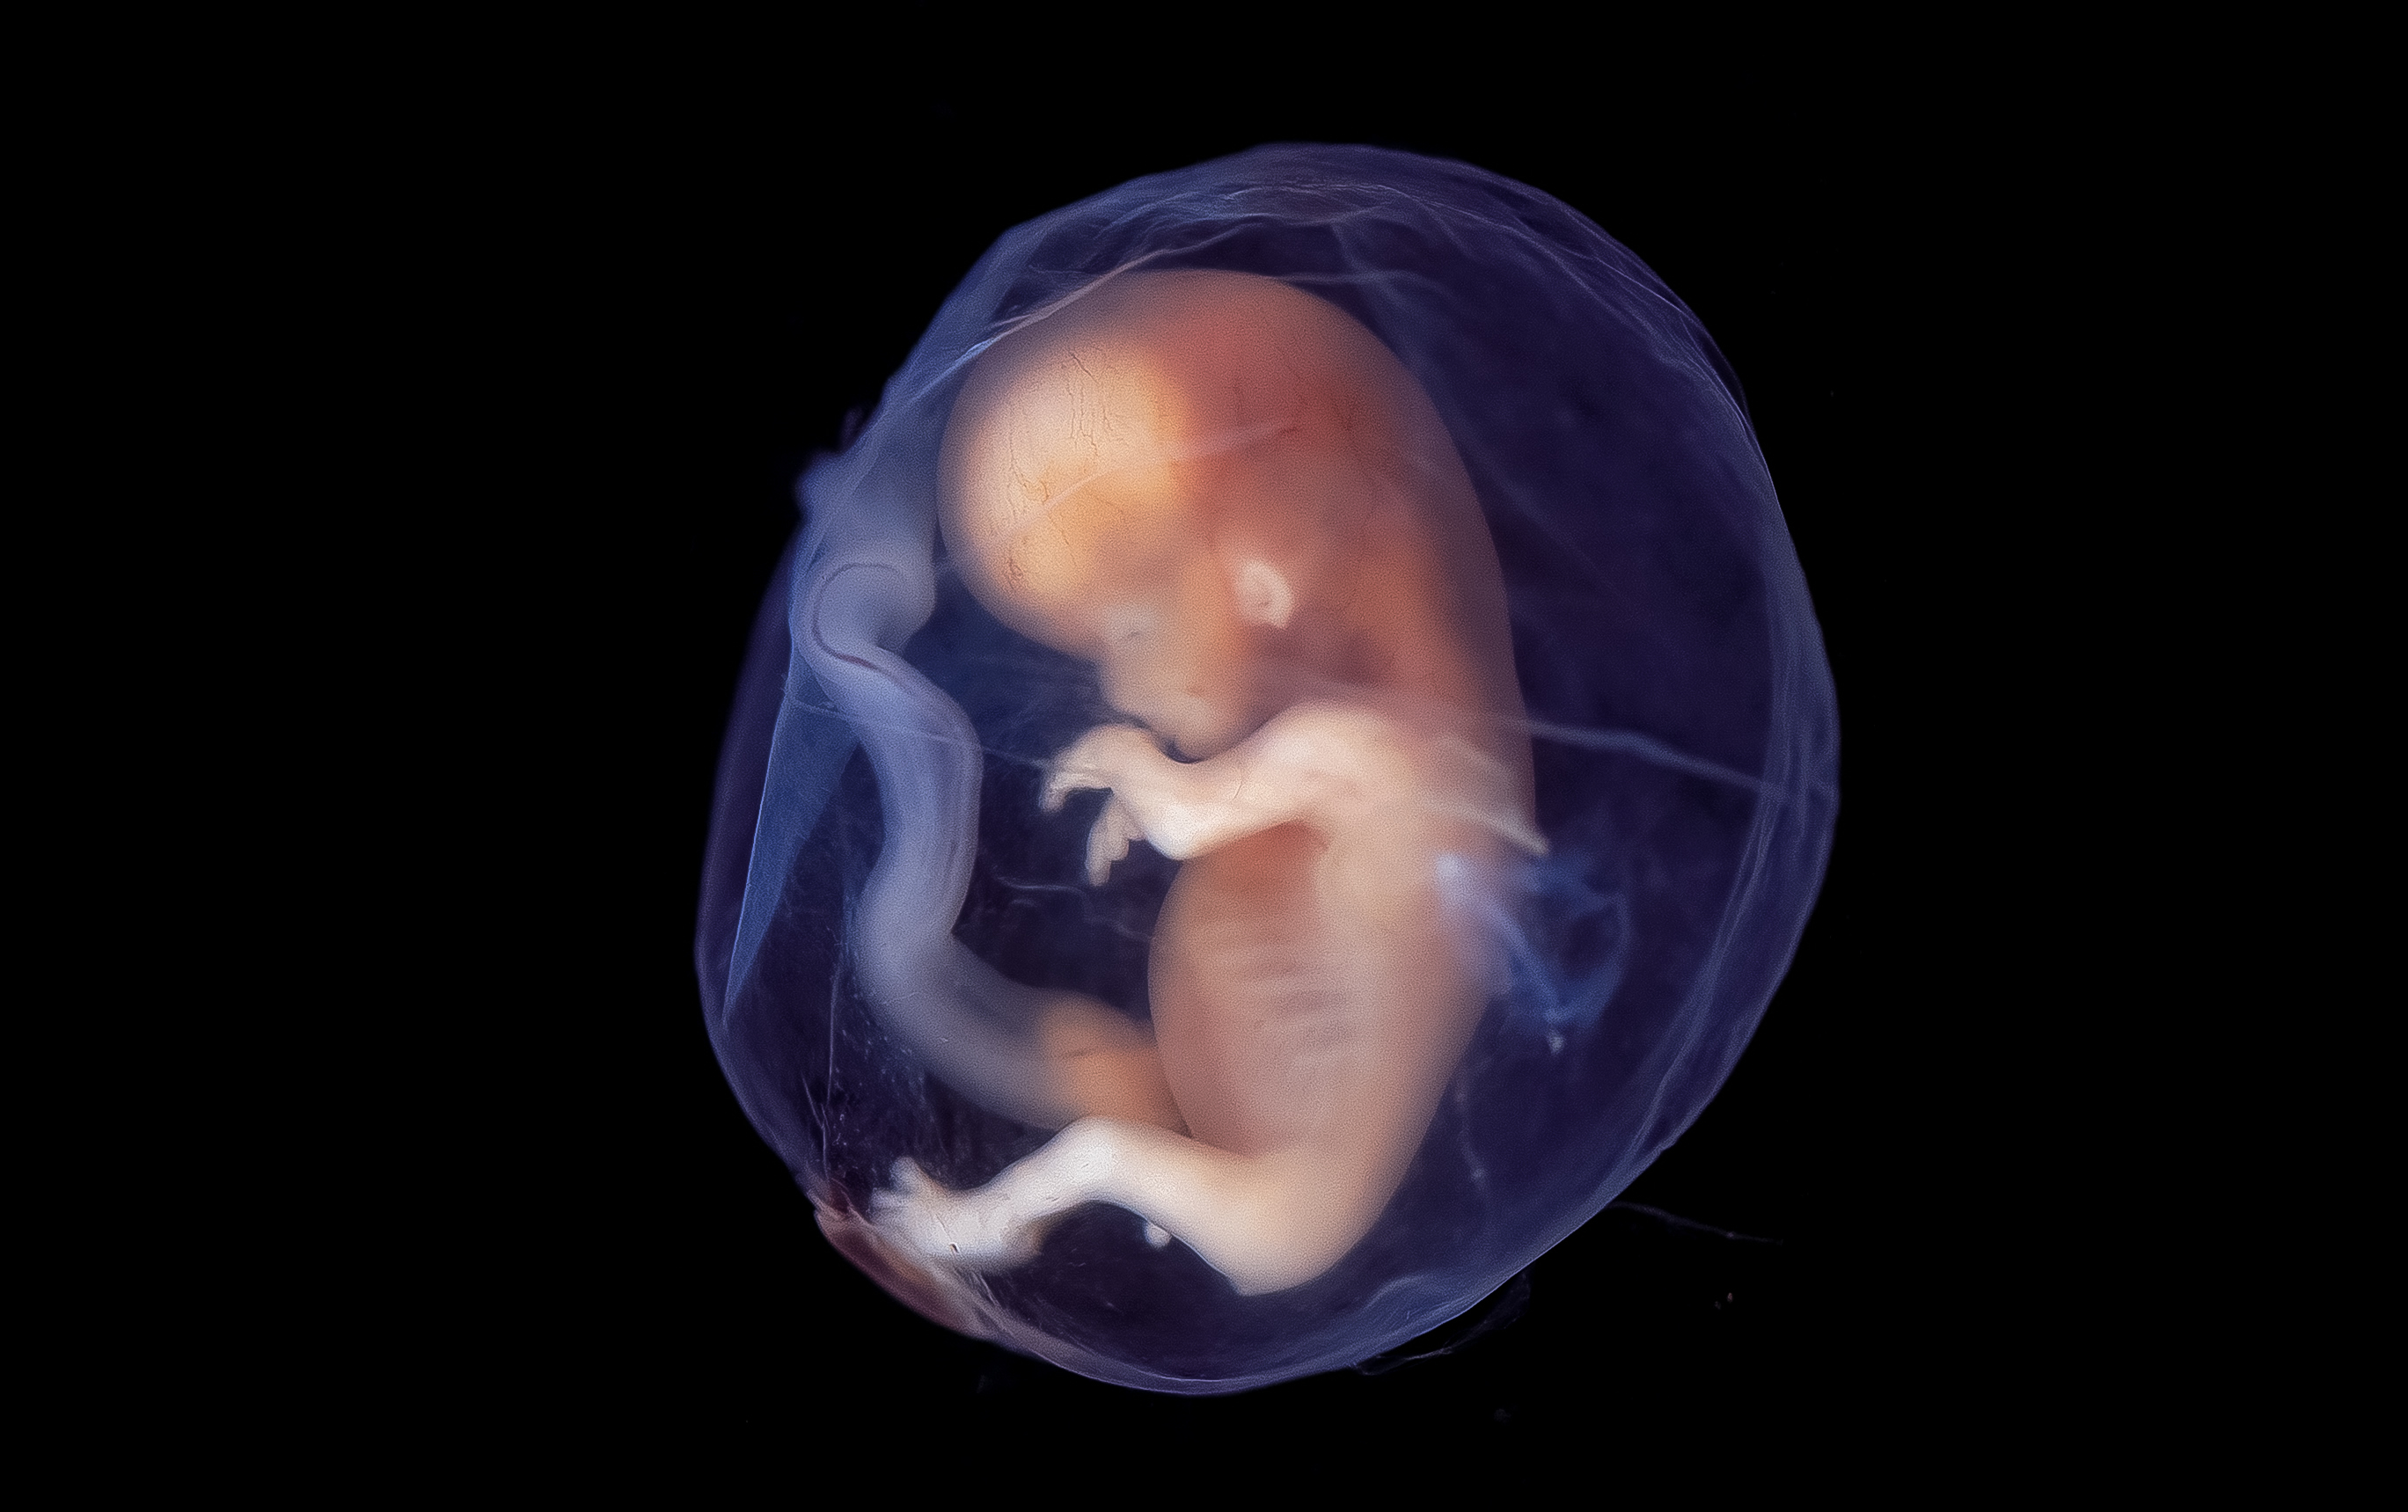 13 лет живет у мамы в животе. Эмбрион по неделям беременности фото 11 недель. Плод на 9 неделе беременности. Человеческий эмбрион на 12 неделе беременности. Внутриутробный онтогенез.